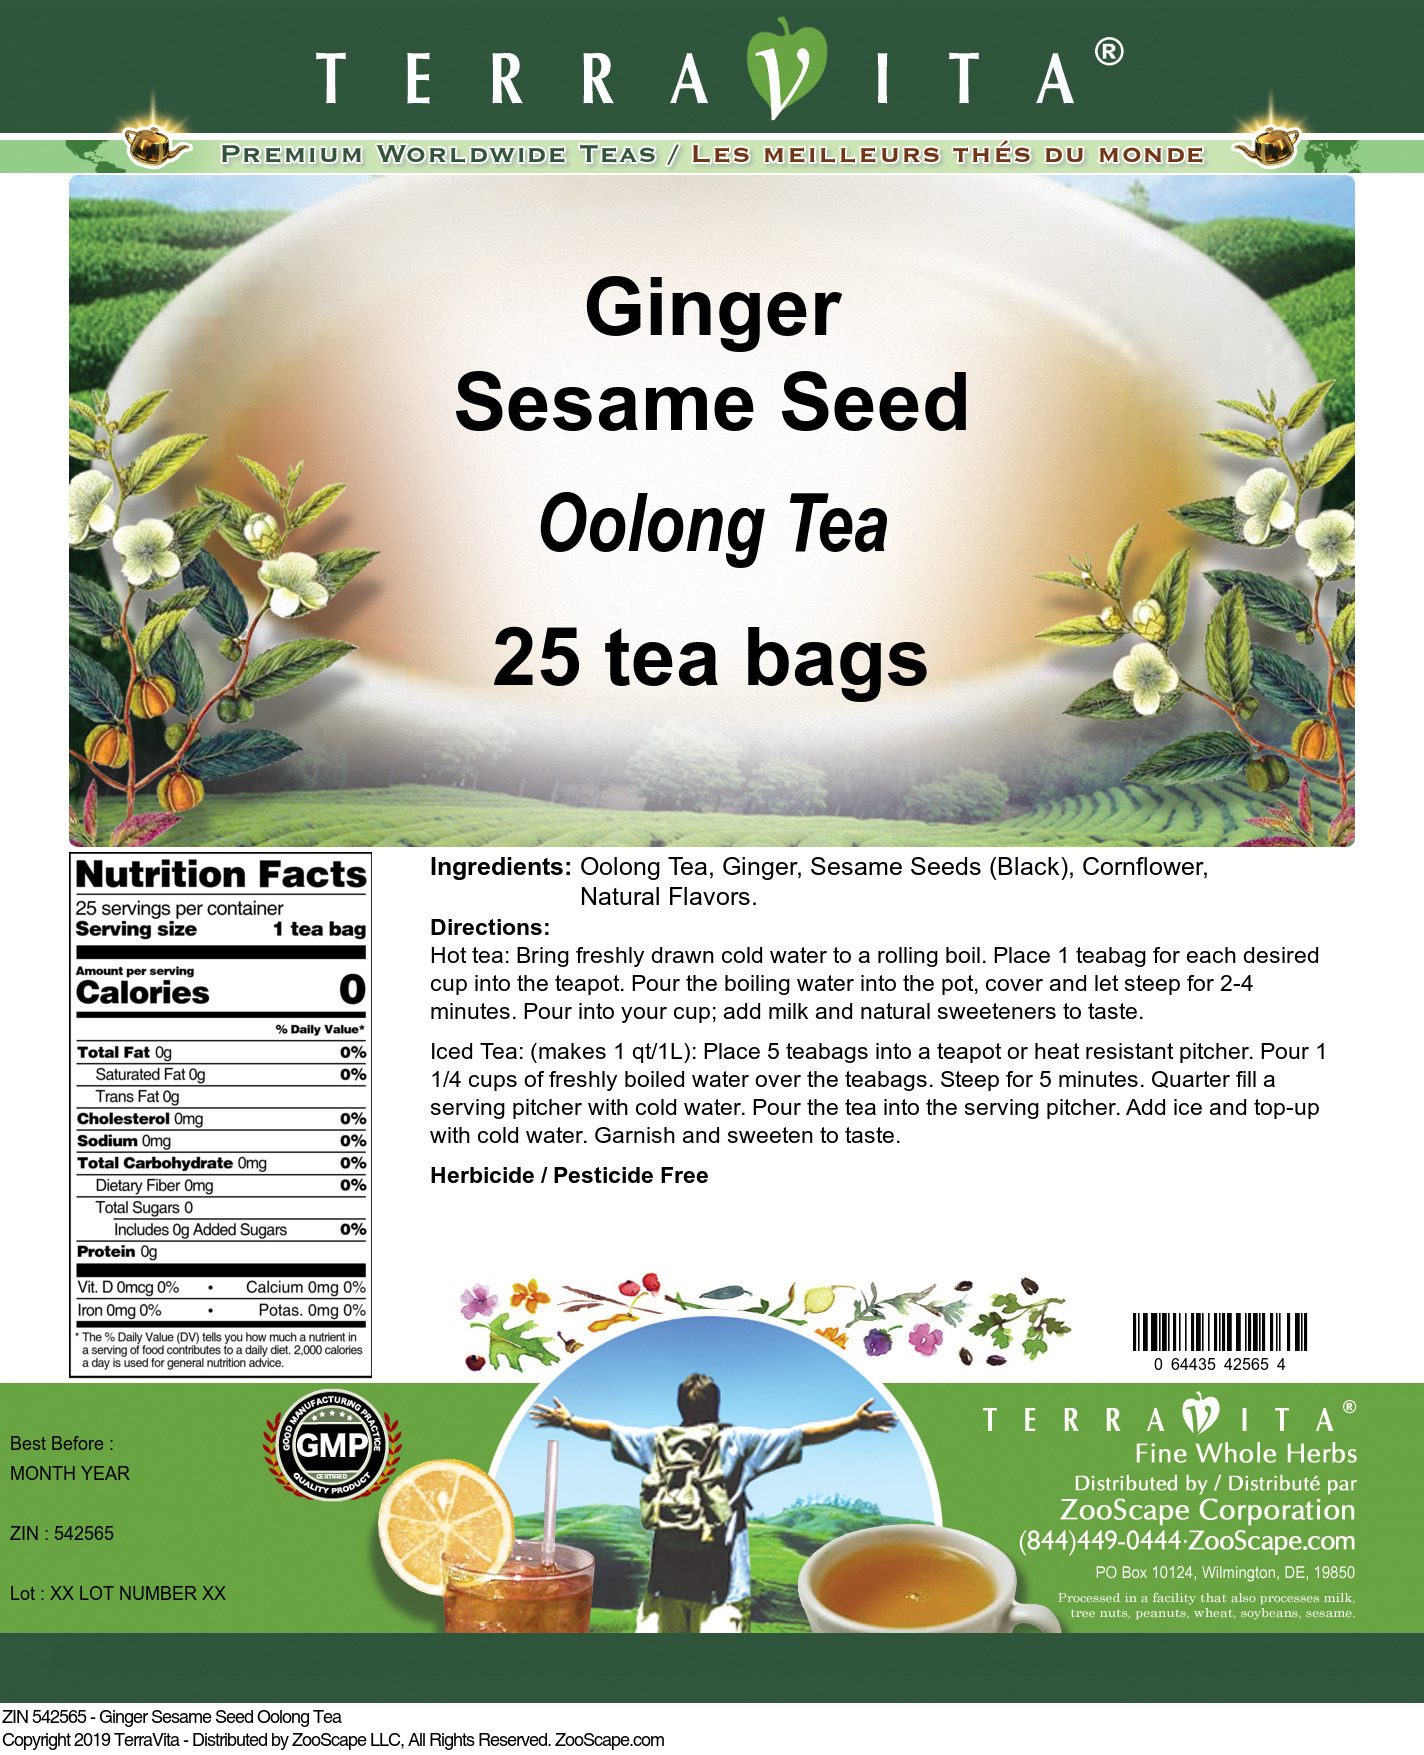 Ginger Sesame Seed Oolong Tea - Label